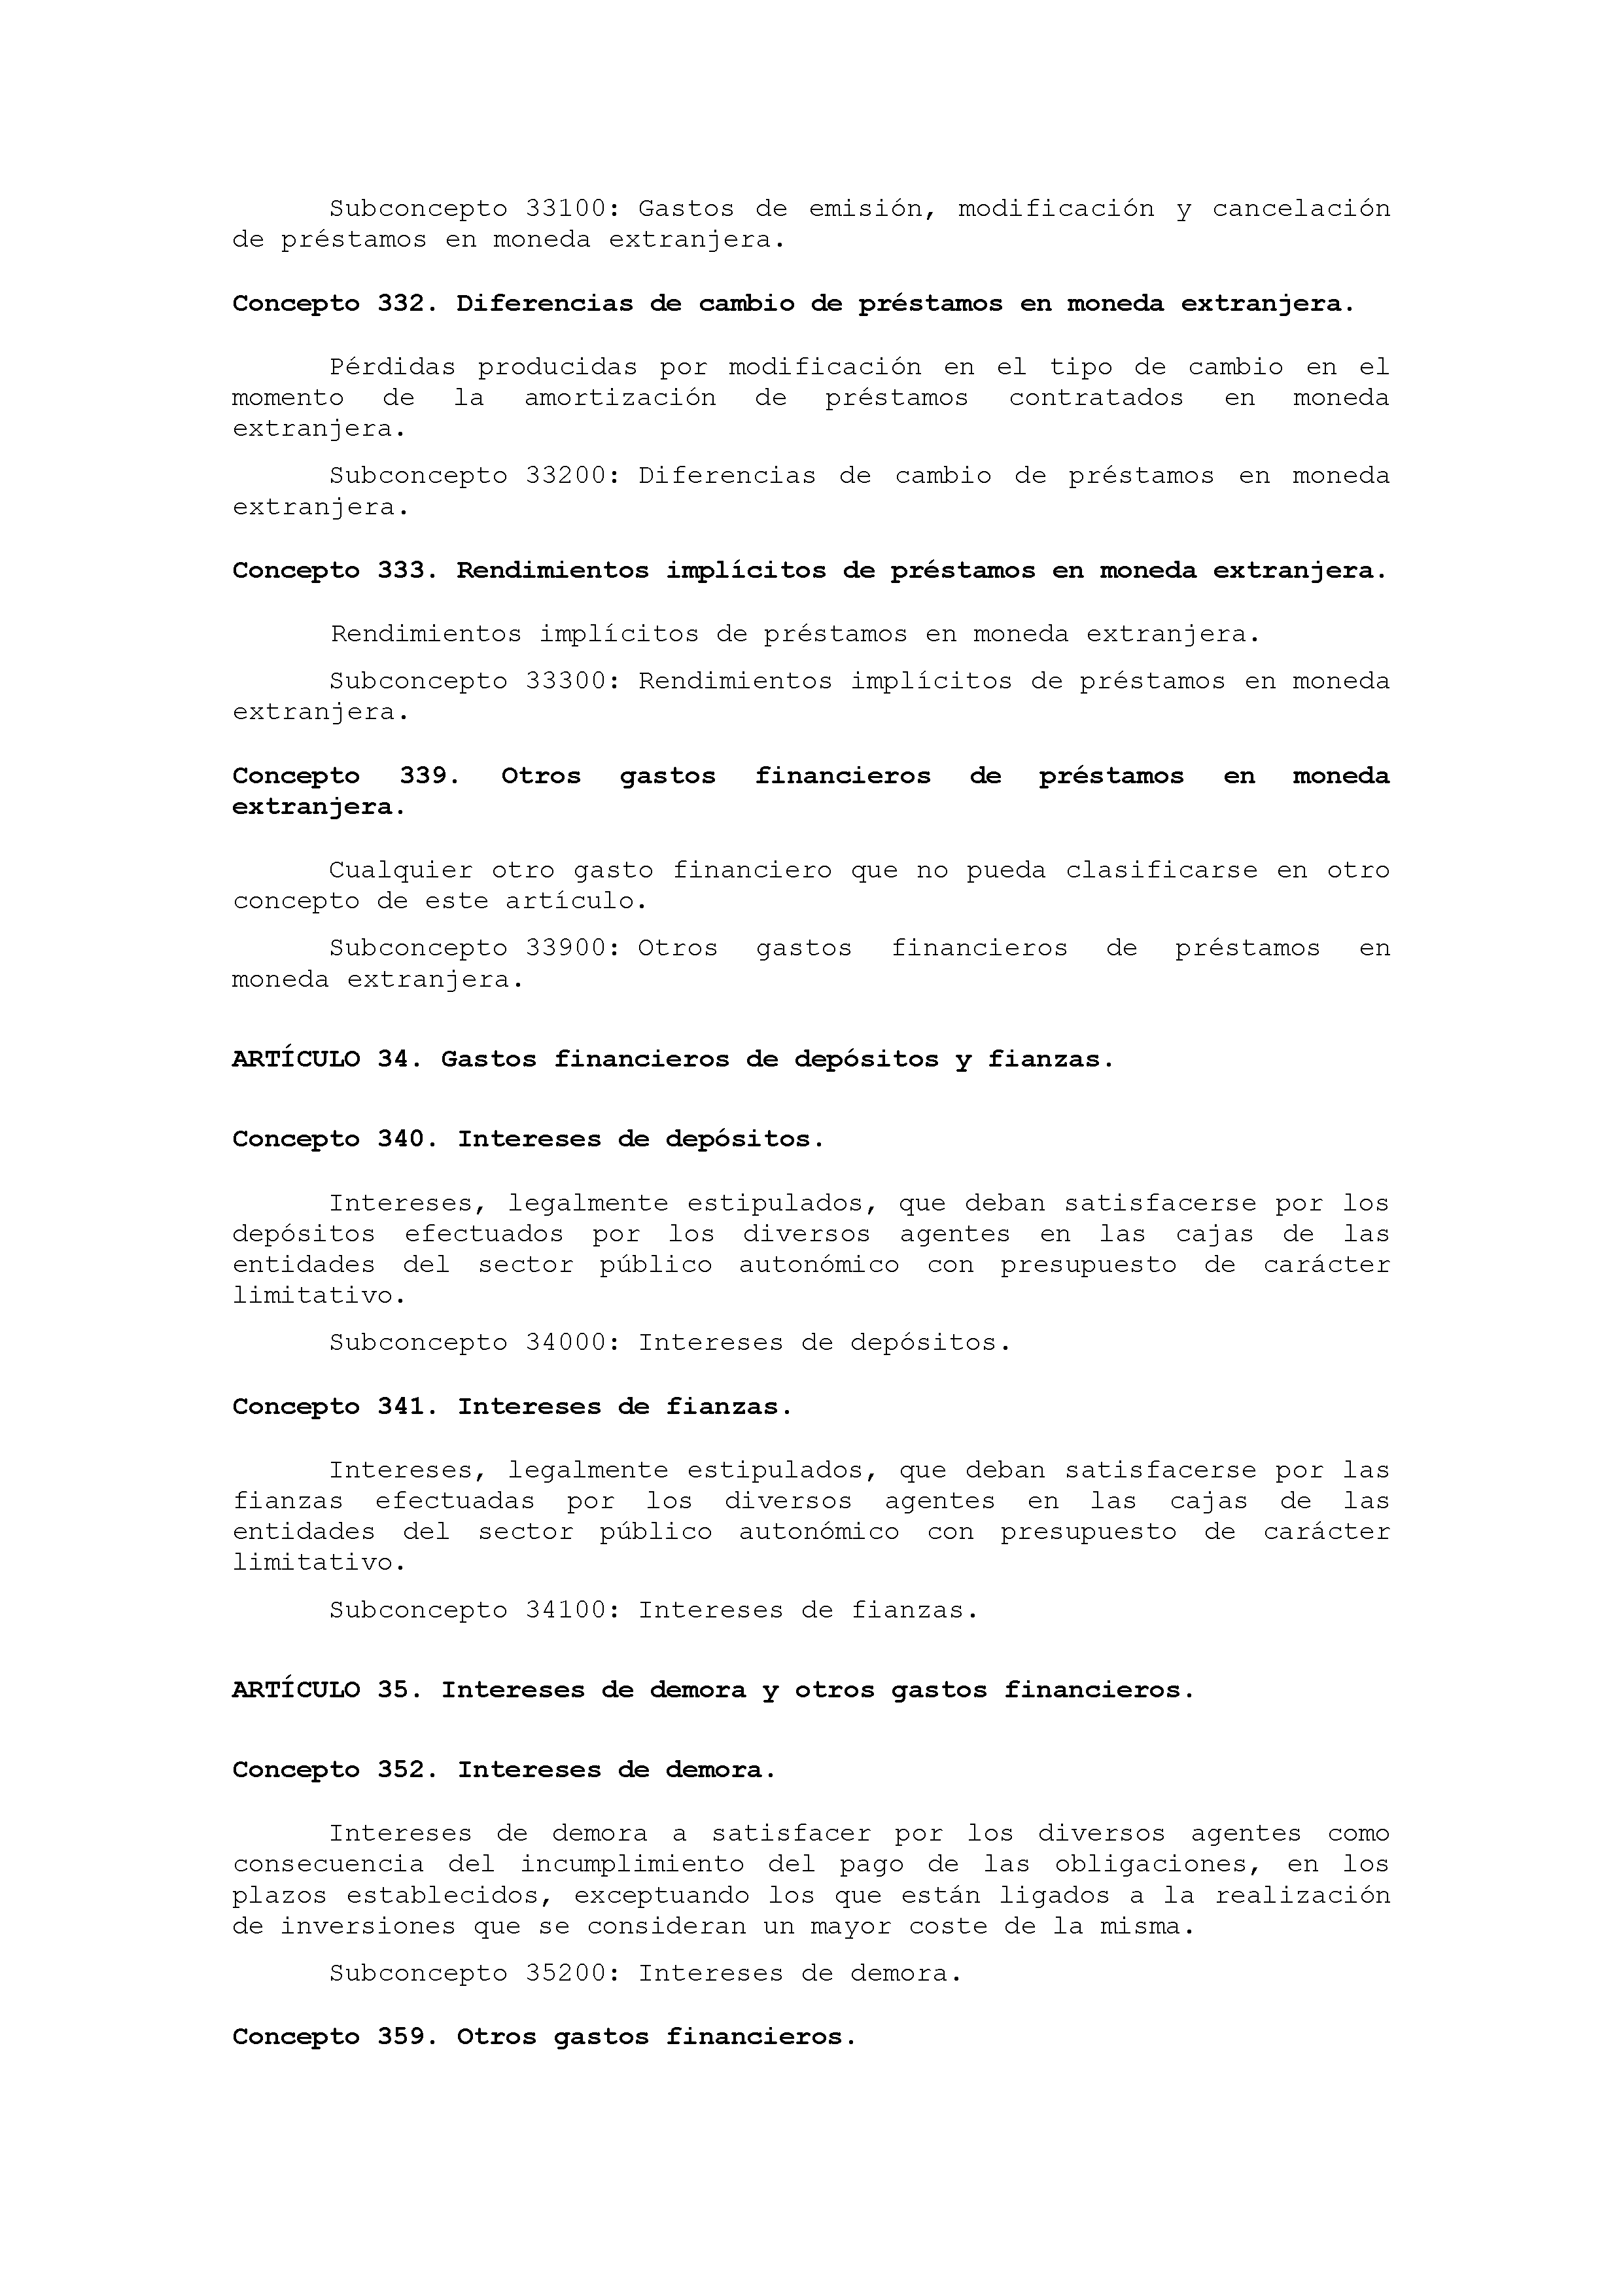 ANEXO IX CÓDIGO DE LA CLASIFICACIÓN ECONÓMICA DE LOS GASTOS PÚBLICOS Pag 30